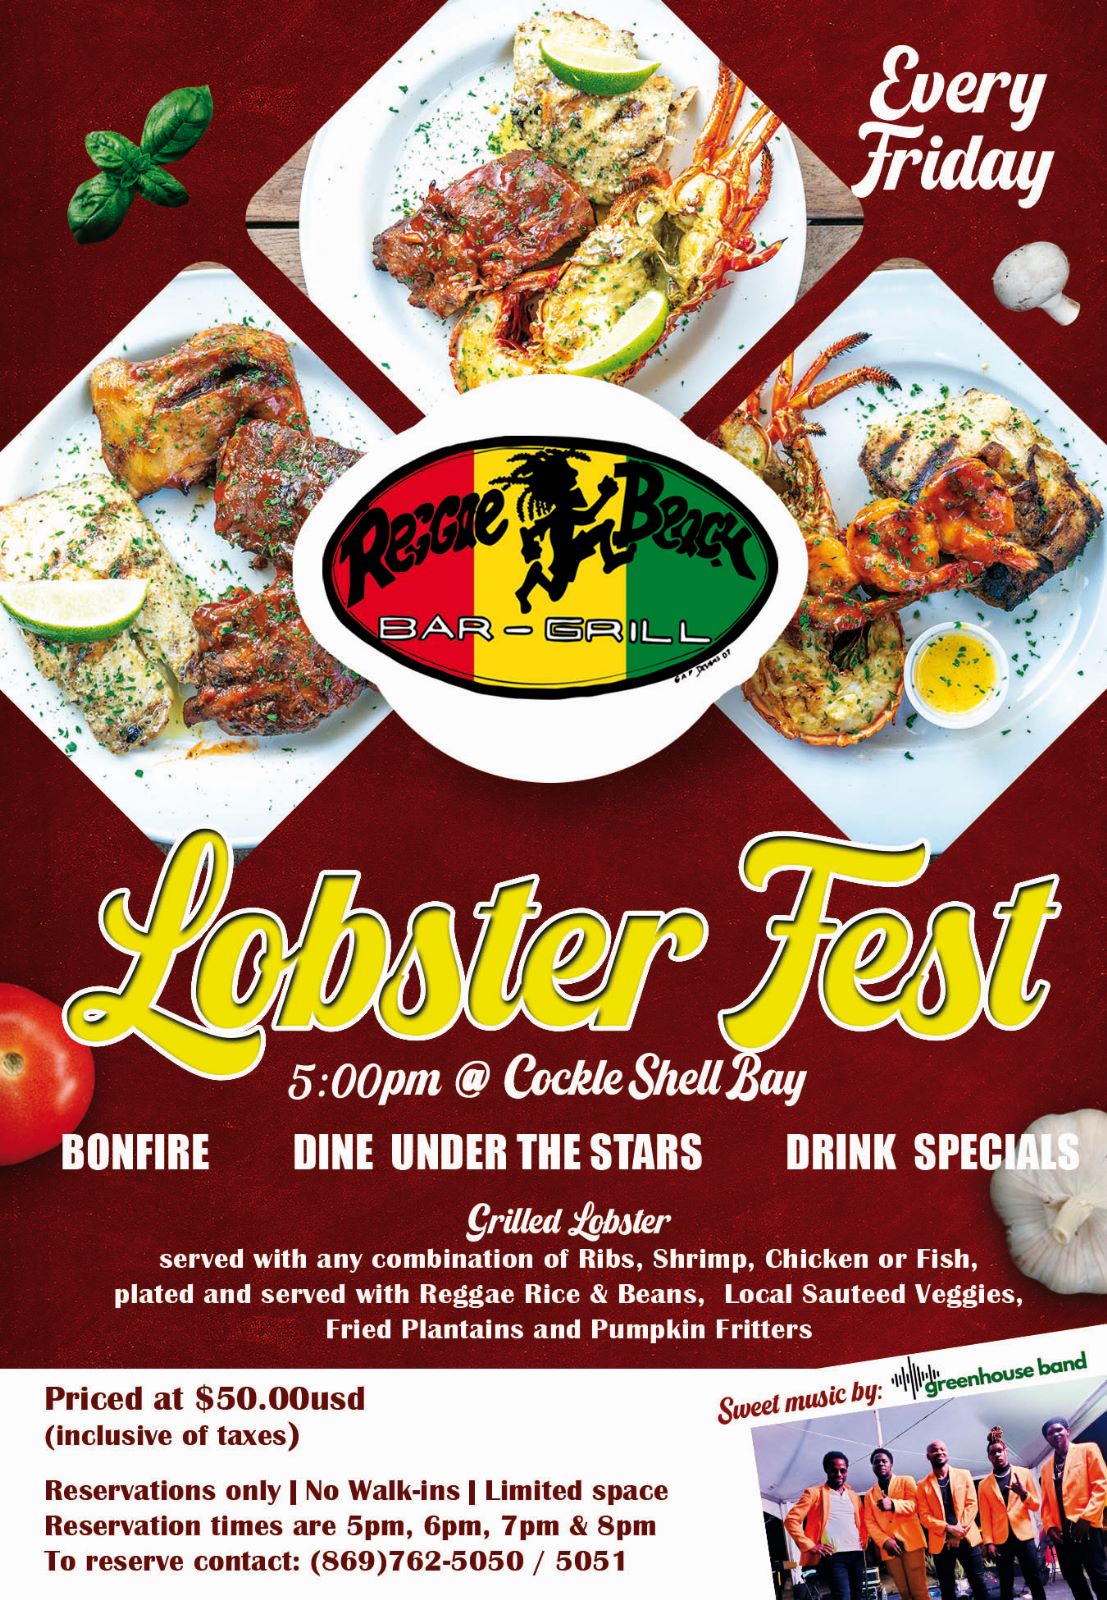 Reggae Beach Lobster Fest details